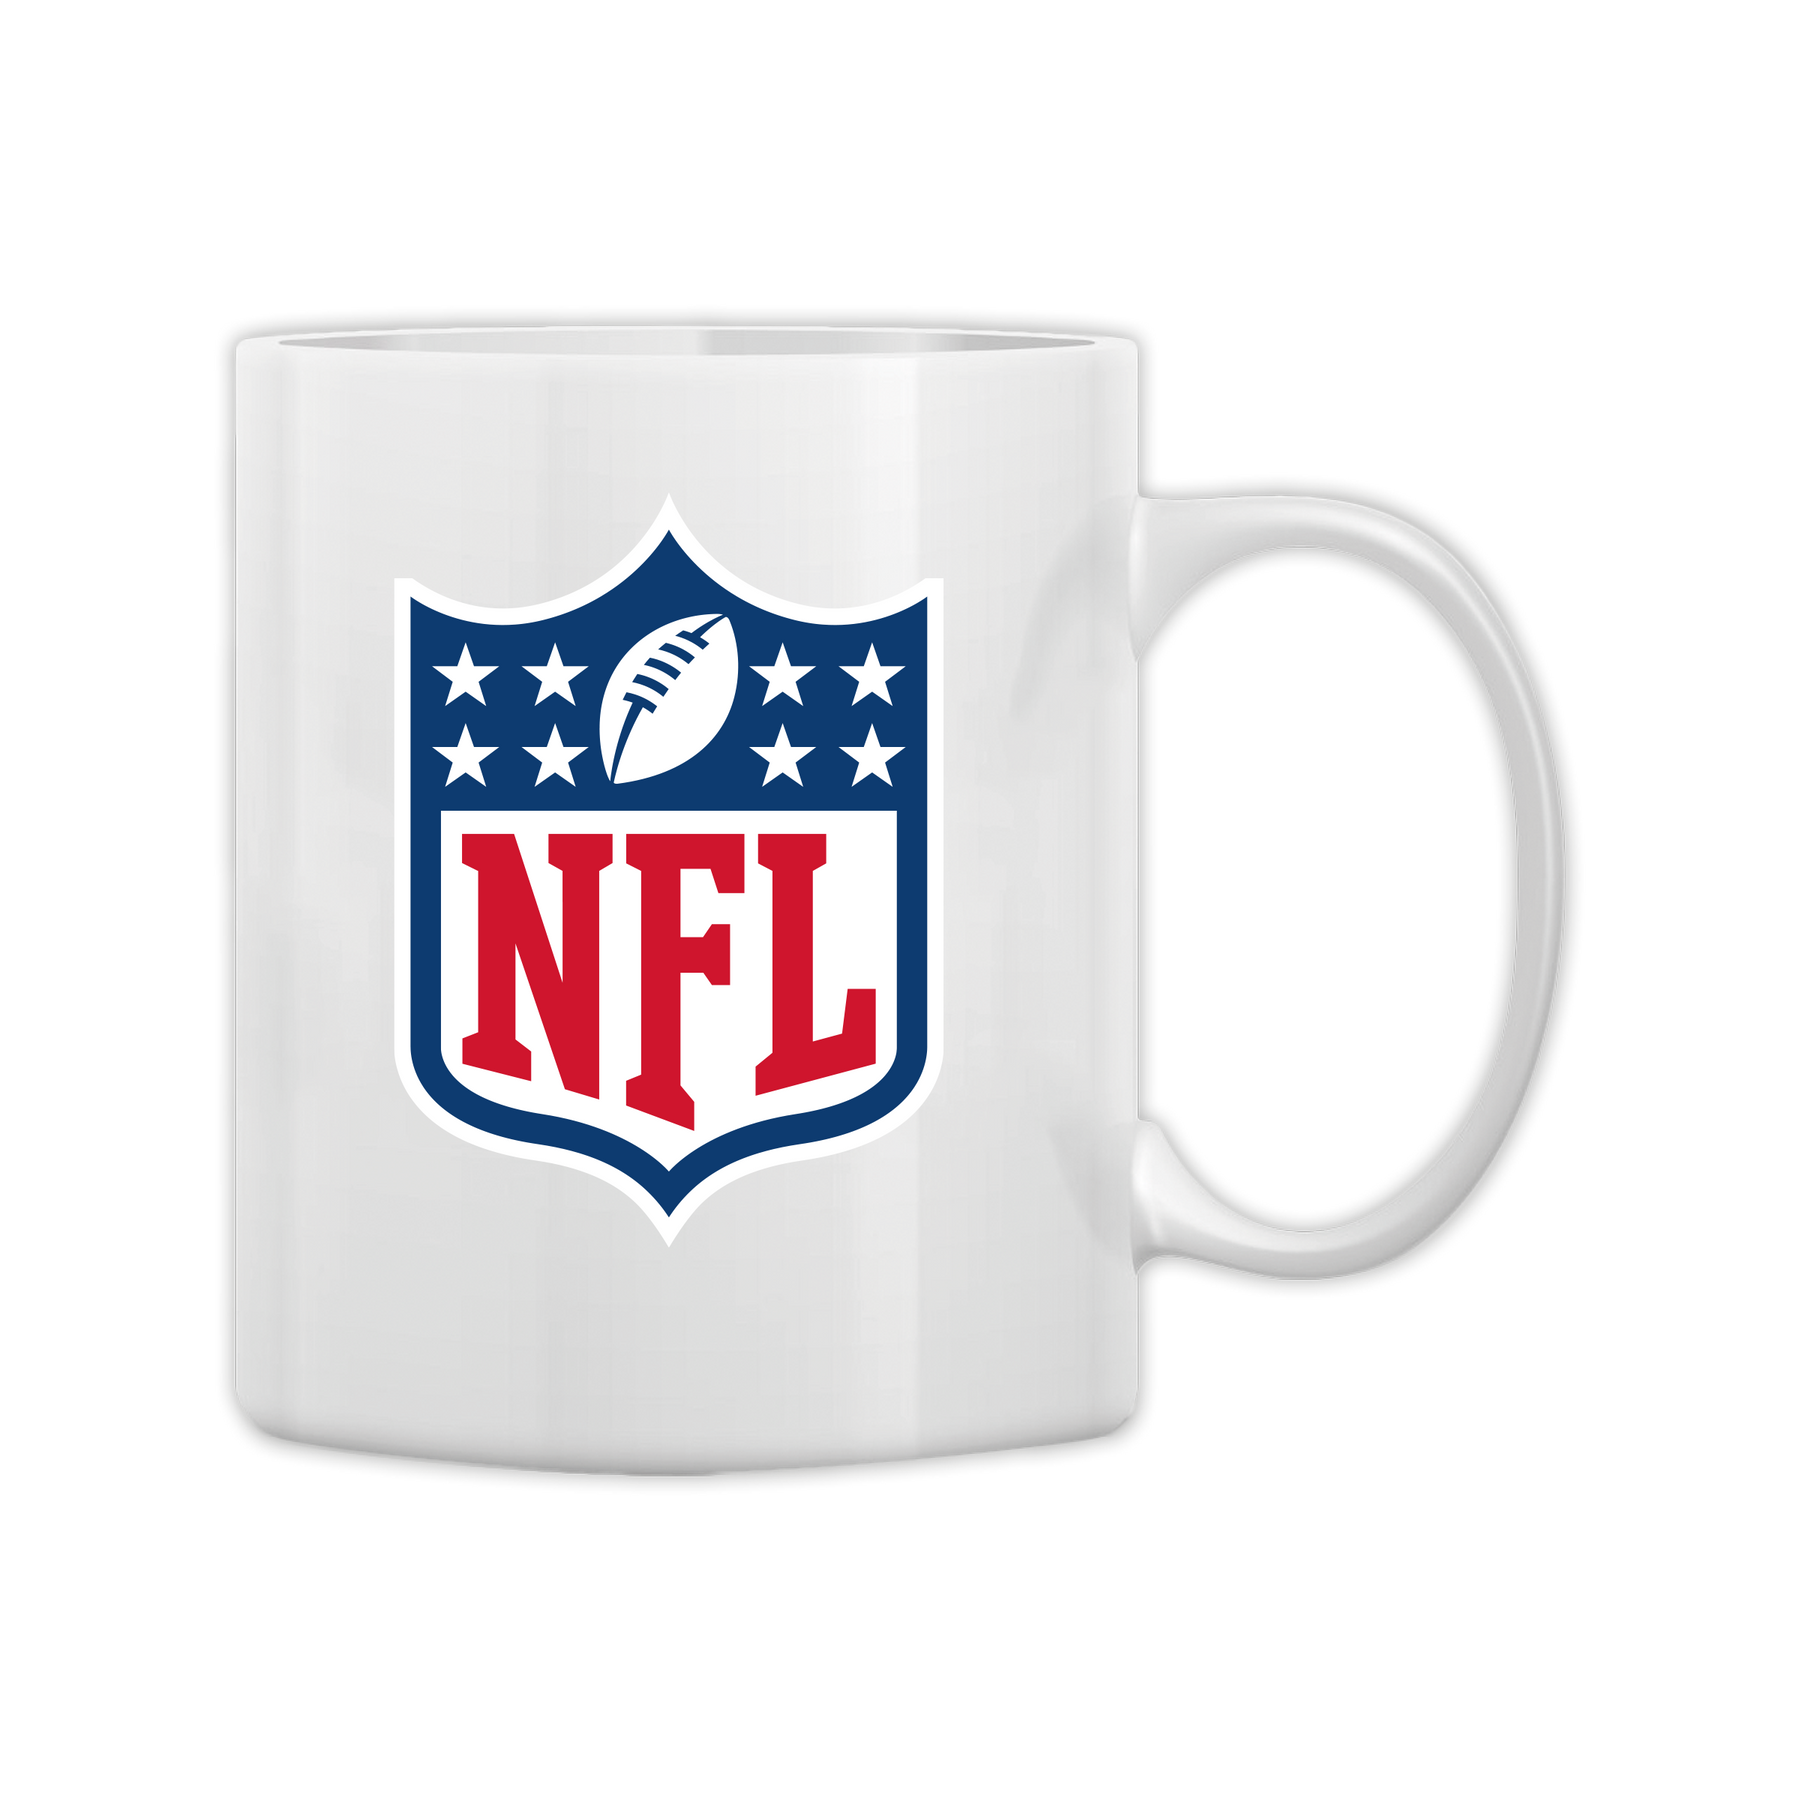 Seattle Seahawks Personalised Mug